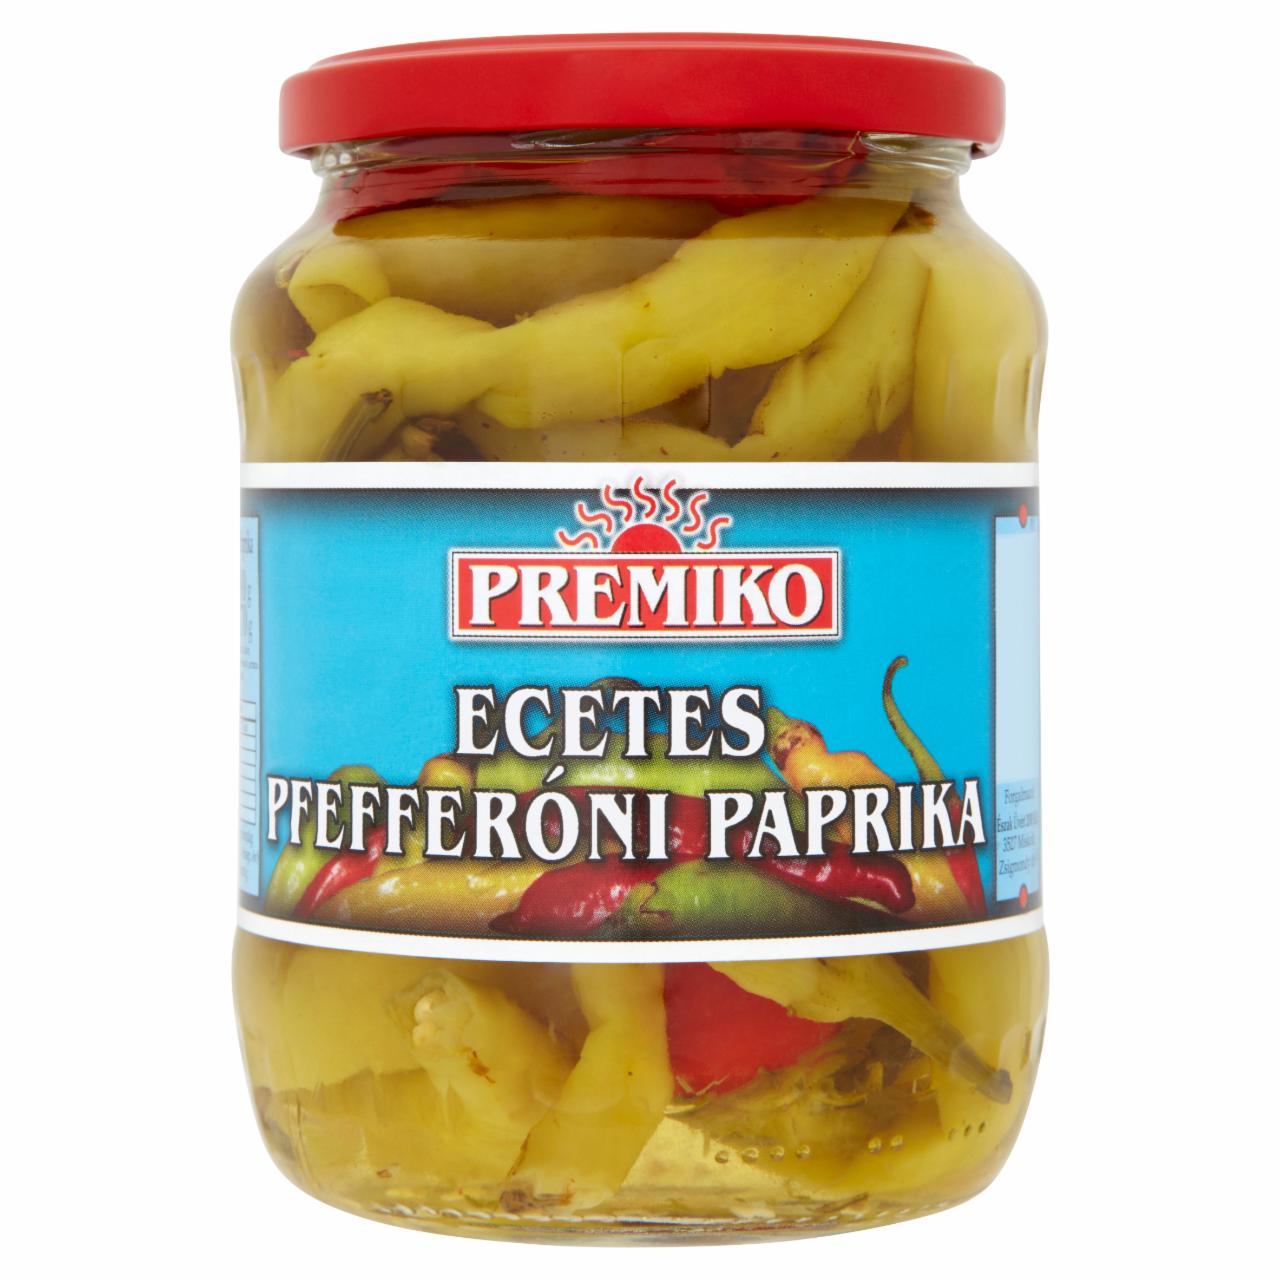 Képek - Premiko ecetes pfefferóni paprika 680 g